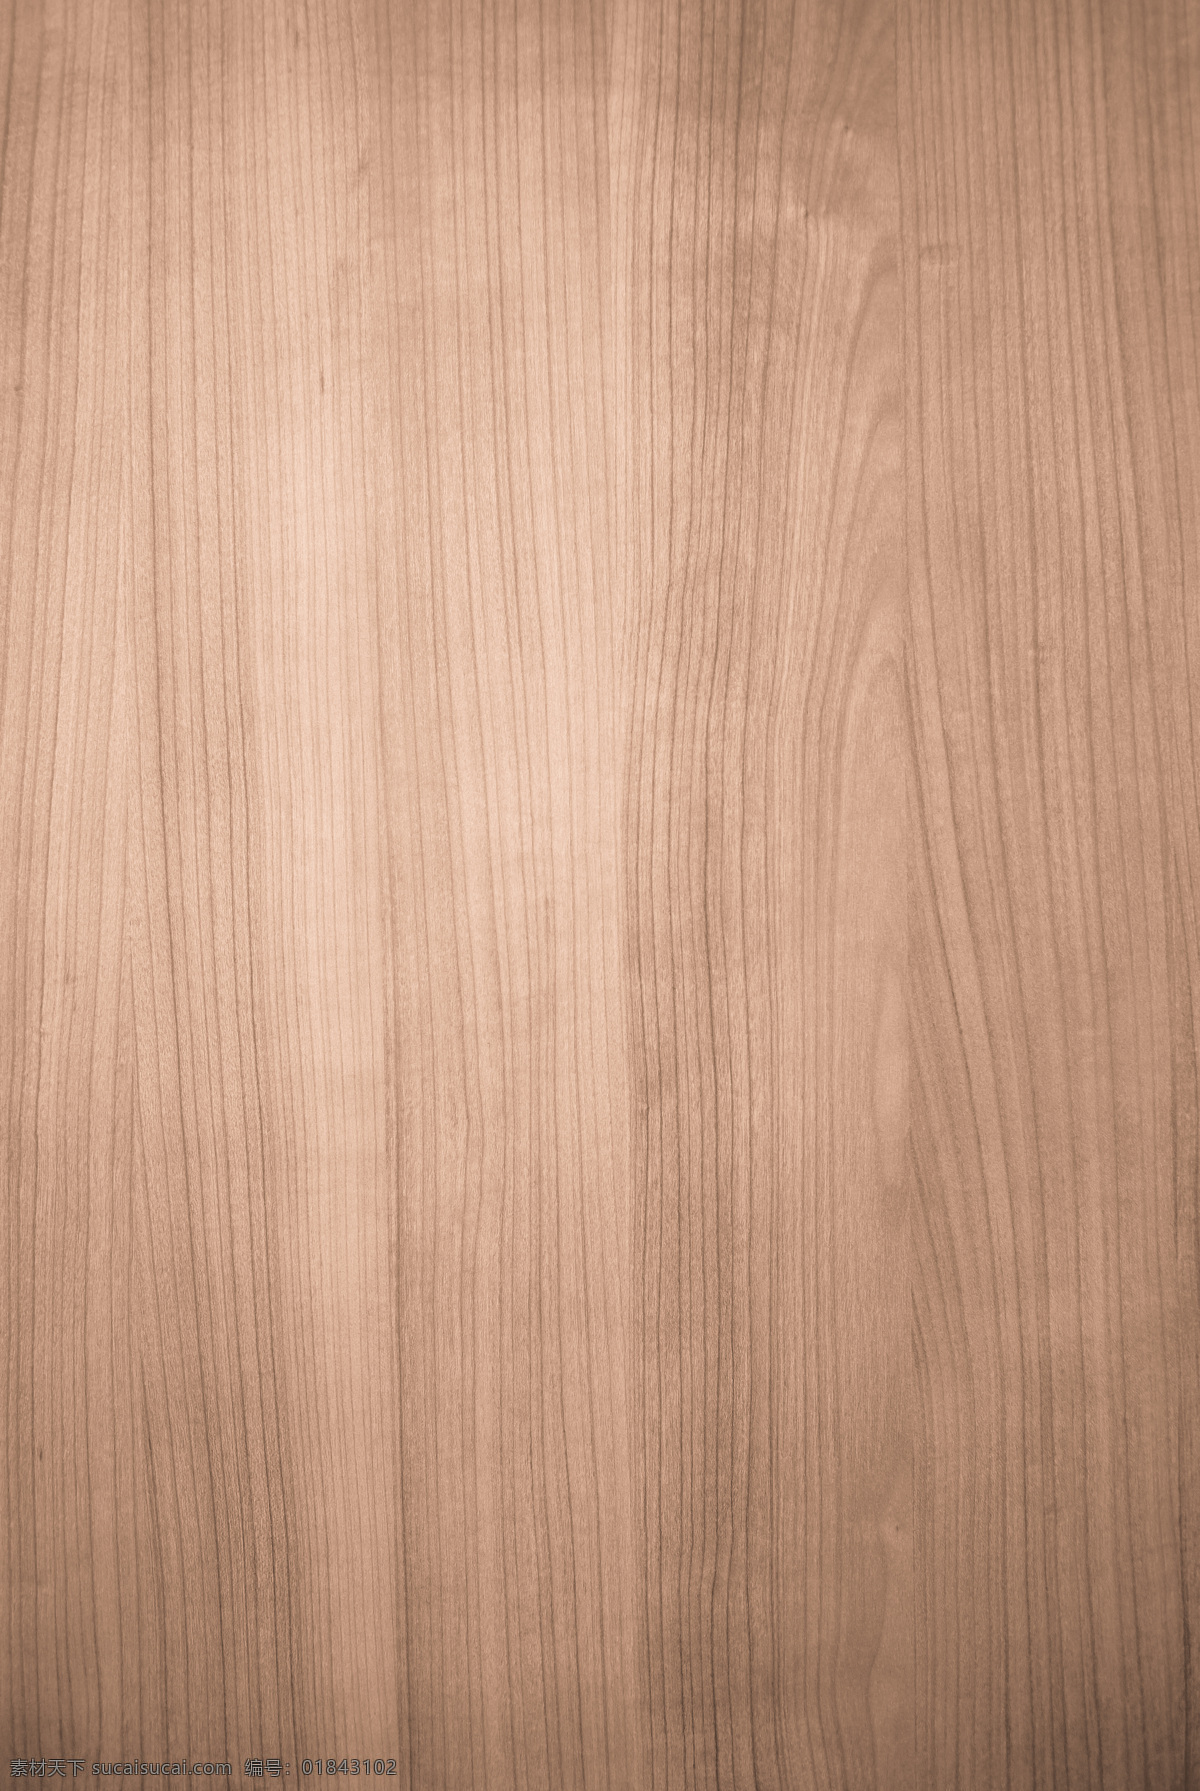 木板地板 木板 地板 木头 木板背景 木地板 木头纹理 家居生活 生活百科